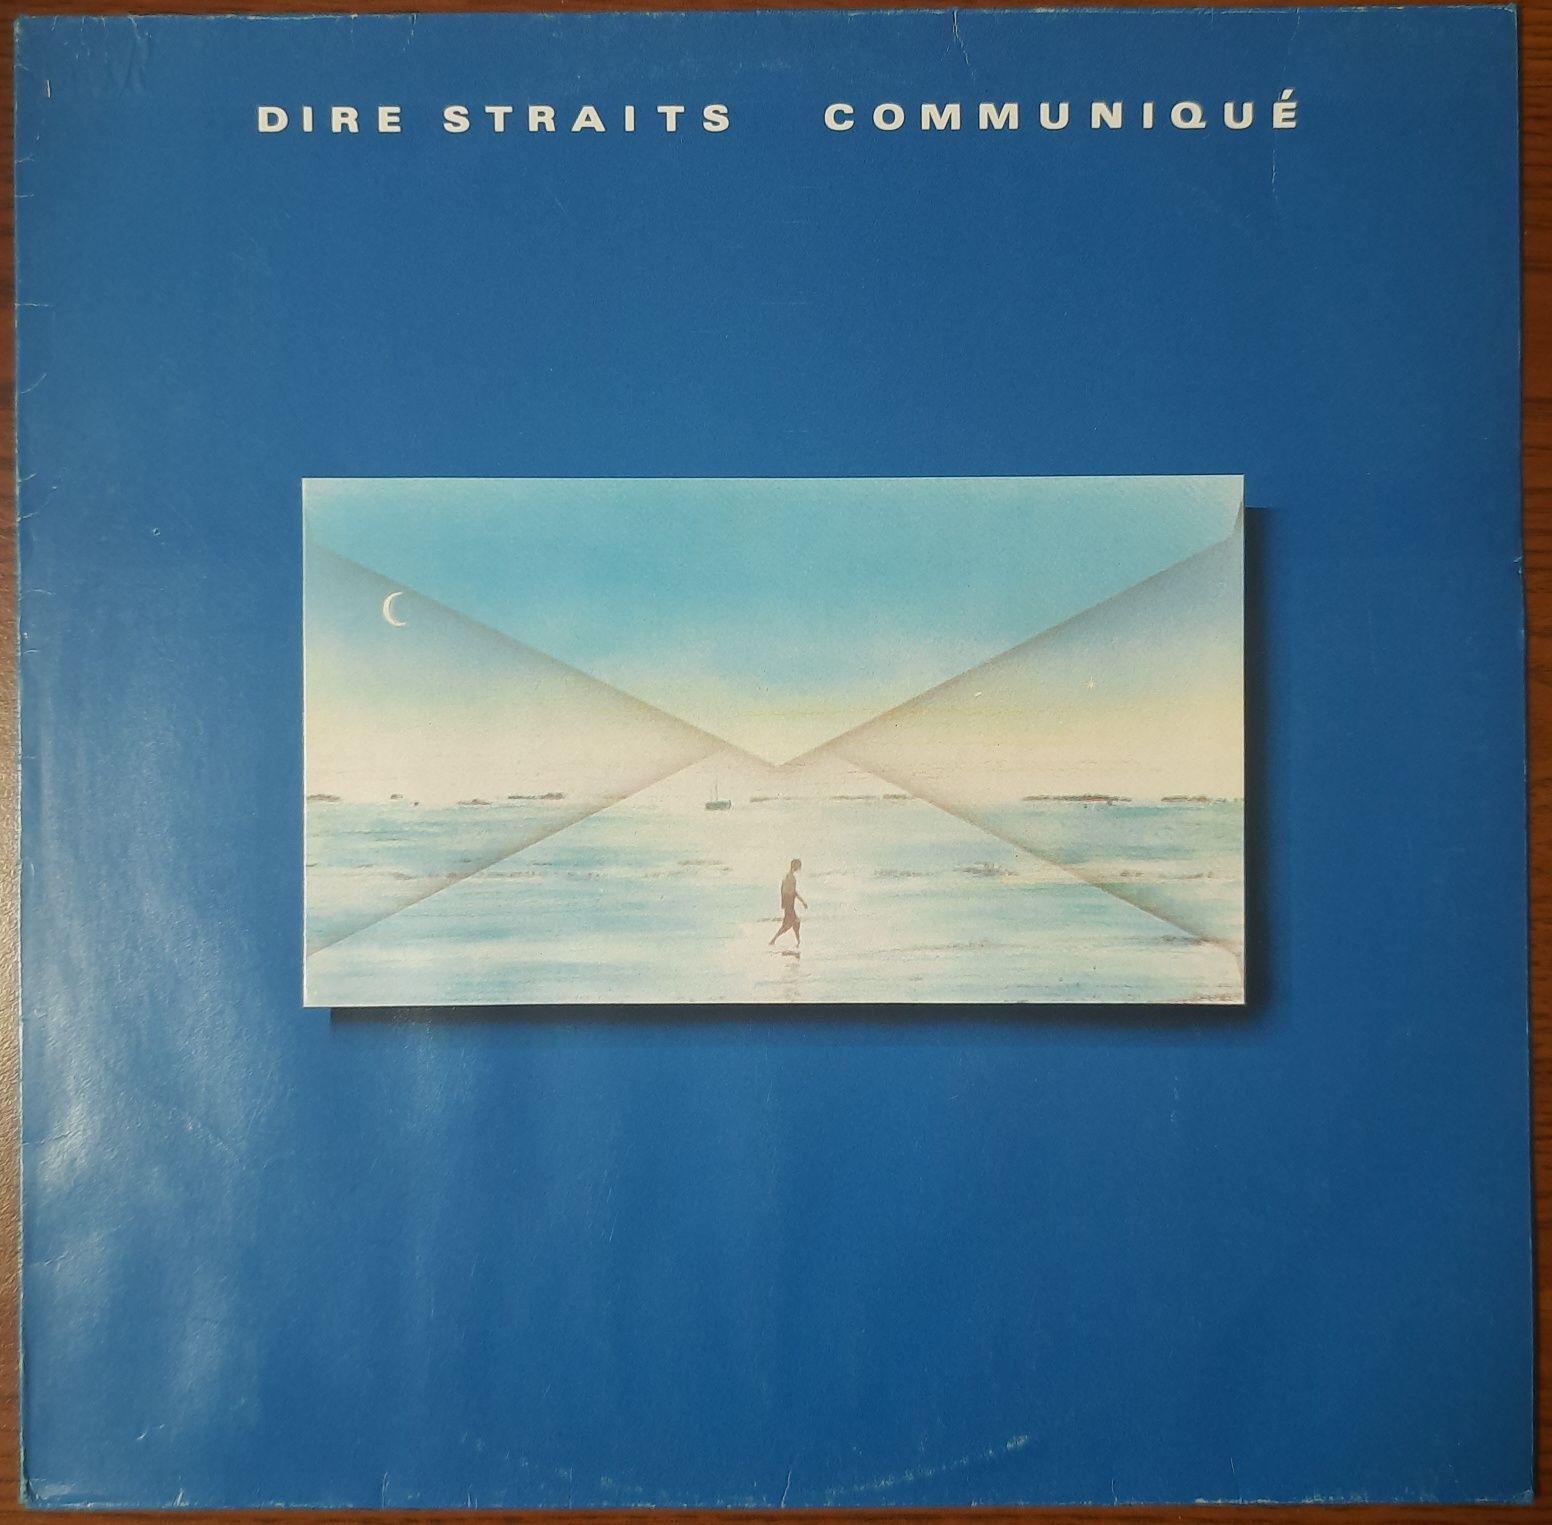 DIRE STRAITS - Communique - 1979.